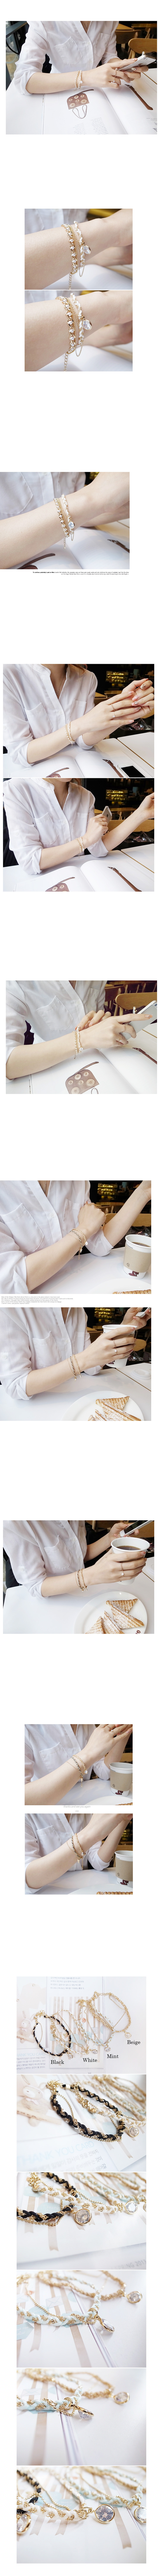 韓國 NaniWorld 雙材質編織佐單鑽氛圍手鏈 #2178 薄荷綠